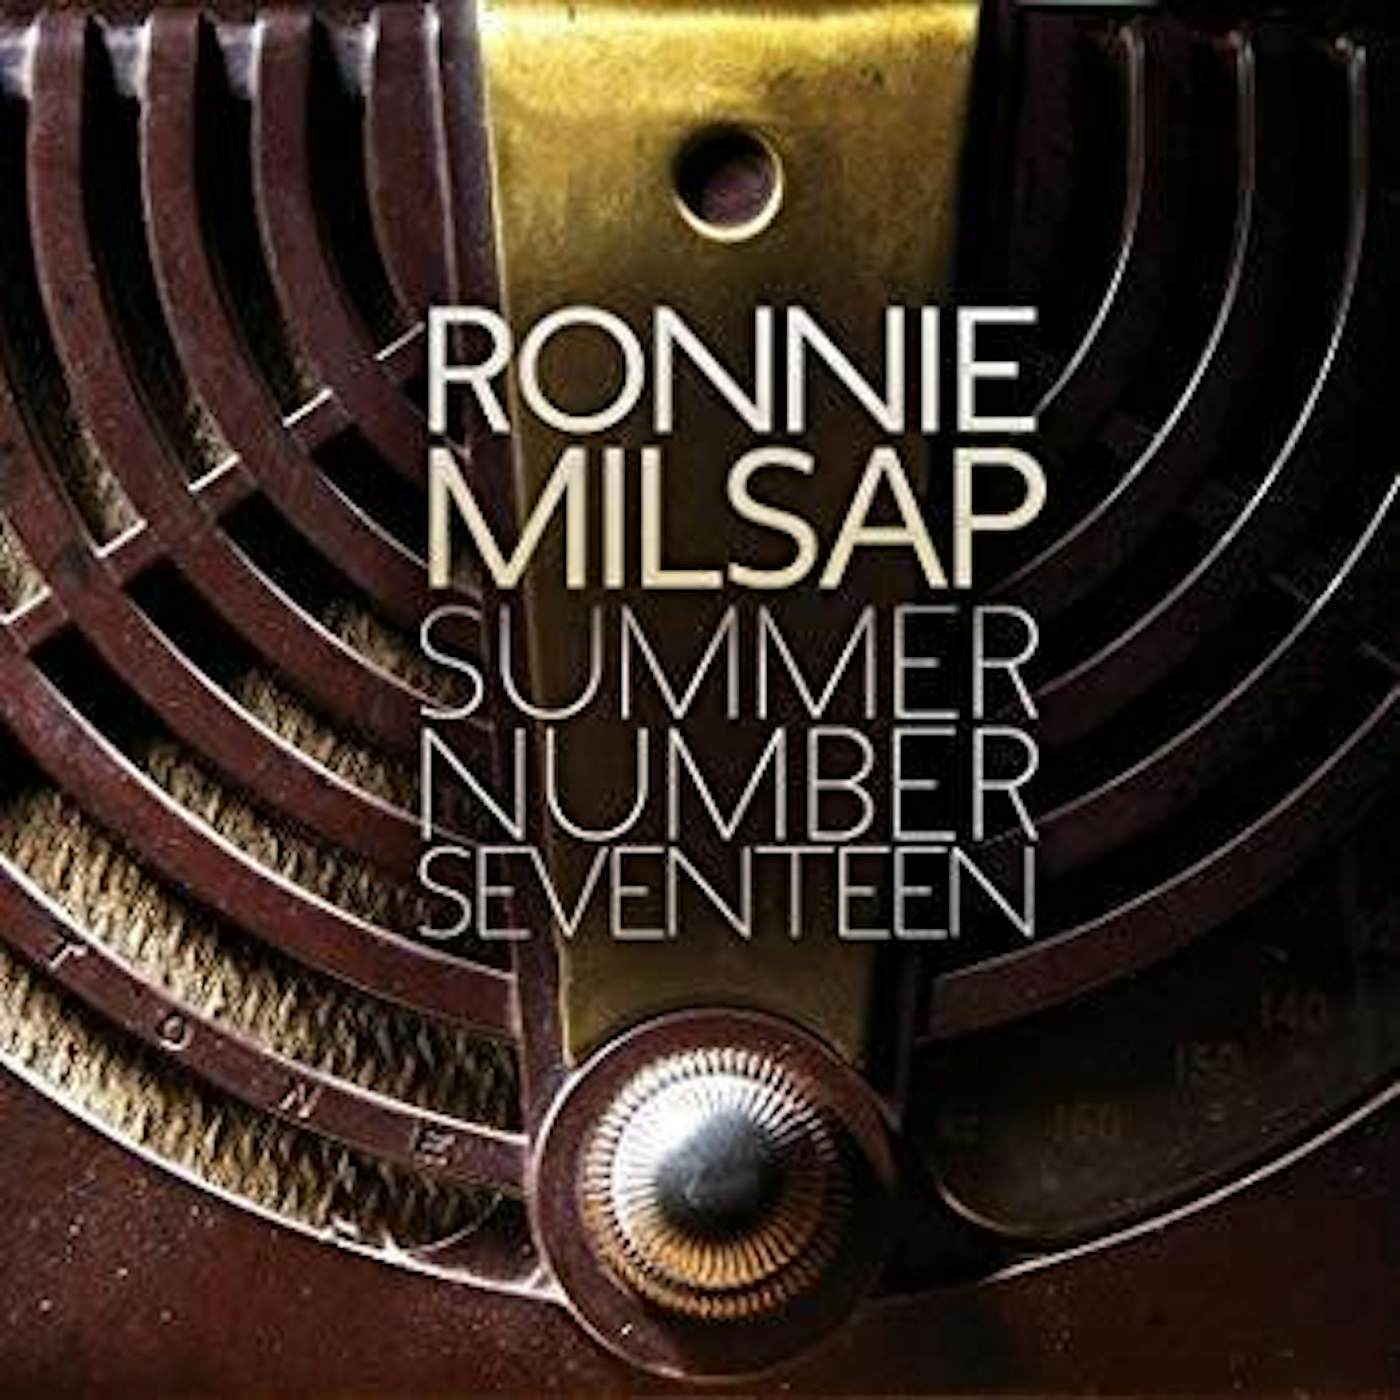 Ronnie Milsap Summer Number Seventeen CD